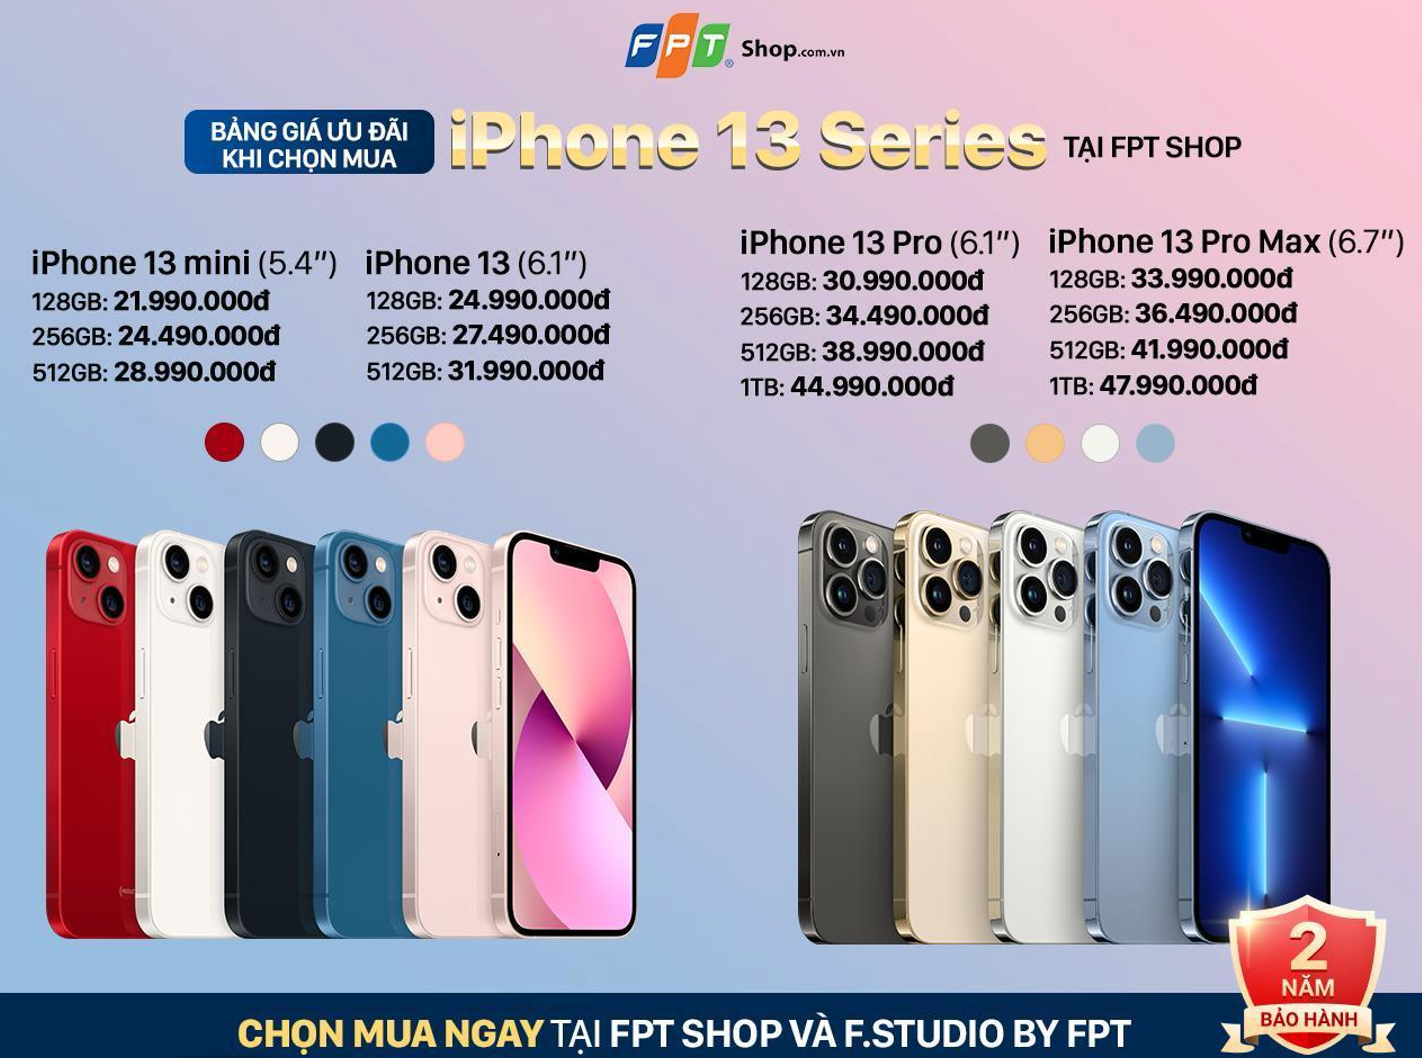 FPT Shop đạt doanh thu kỷ lục trong ngày đầu bán iPhone 13 series - Ảnh 2.